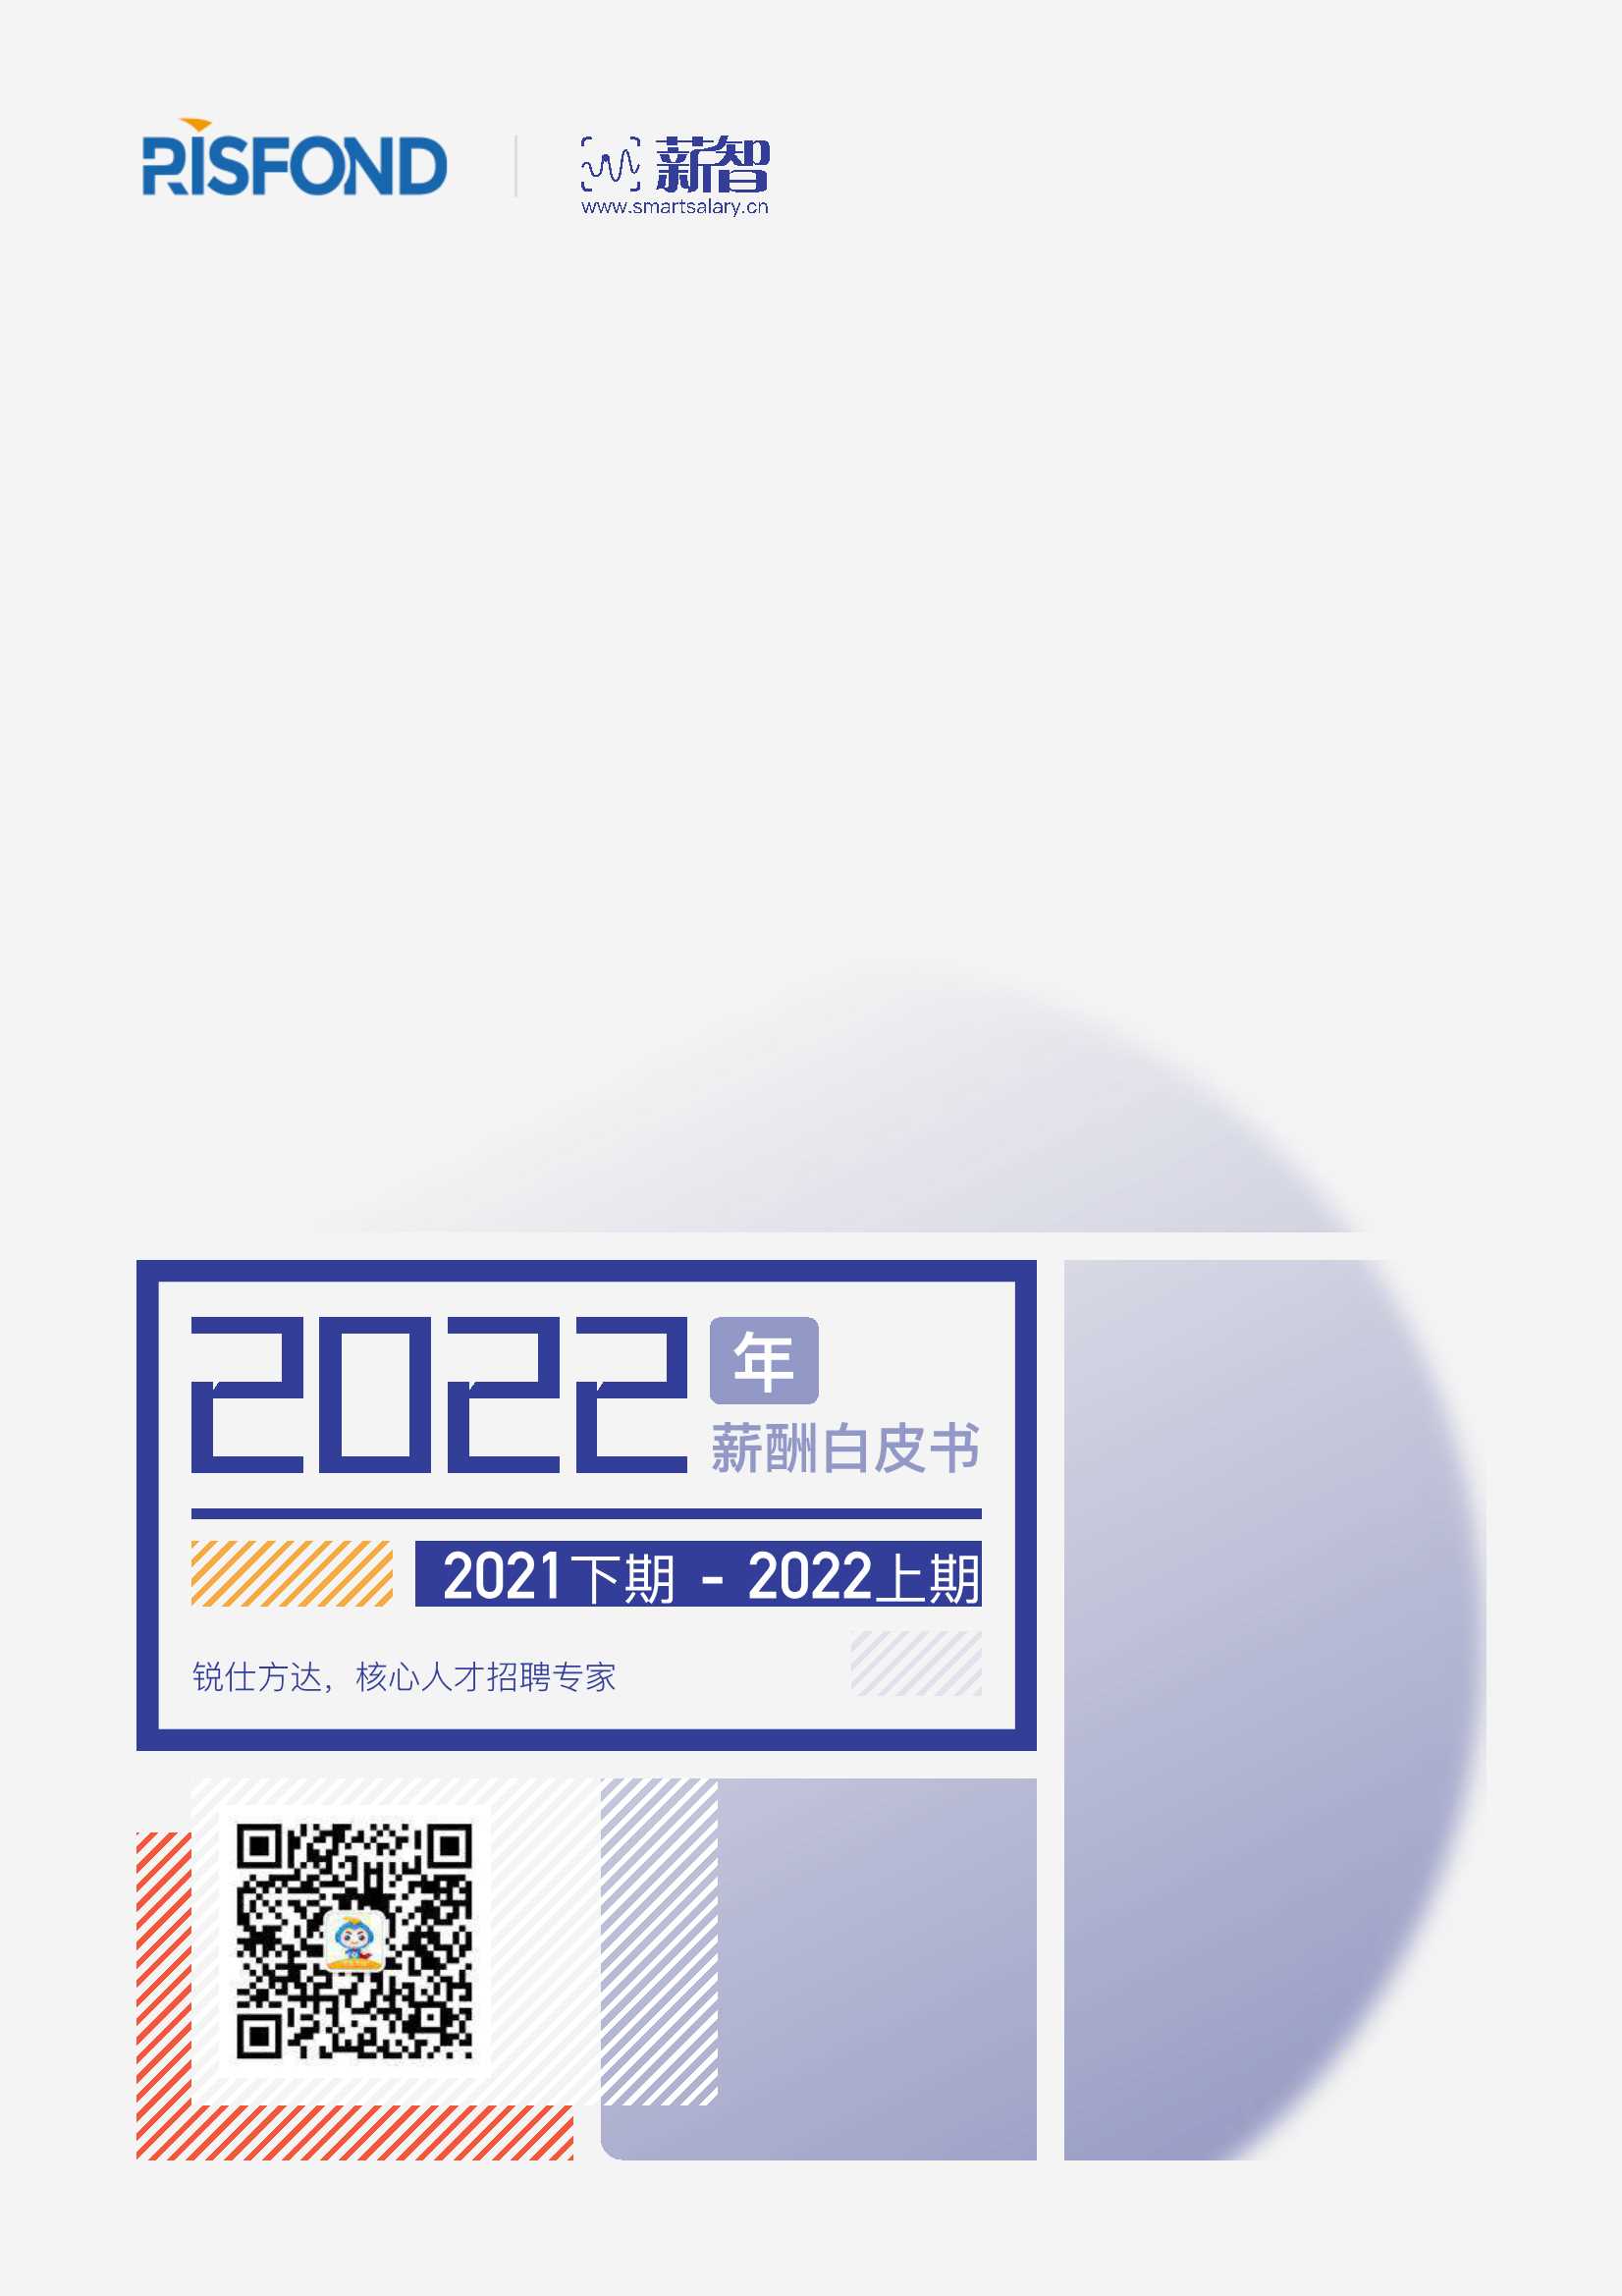 锐仕方达&薪智-2022年薪酬白皮书-2022.02-105页